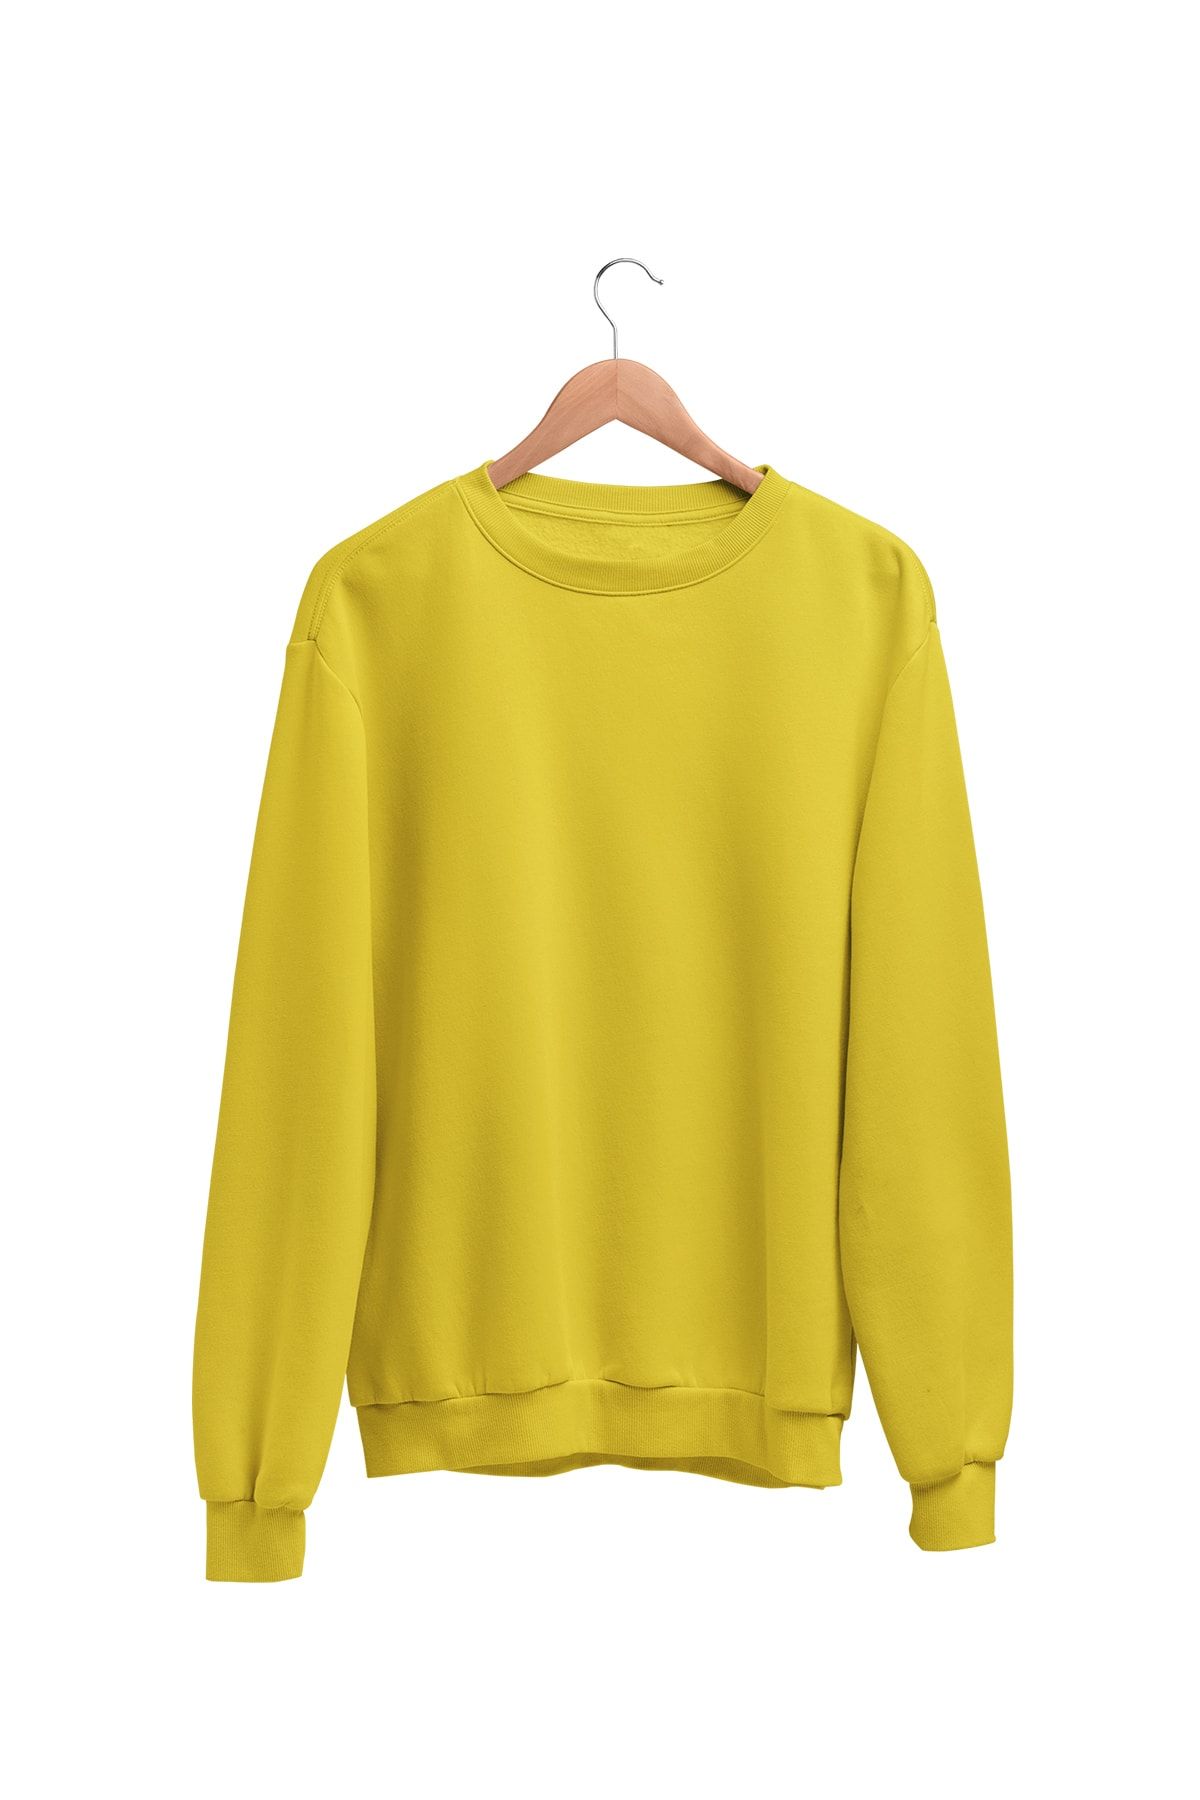 Angemiel Kadın Sarı Wear Sweatshirt